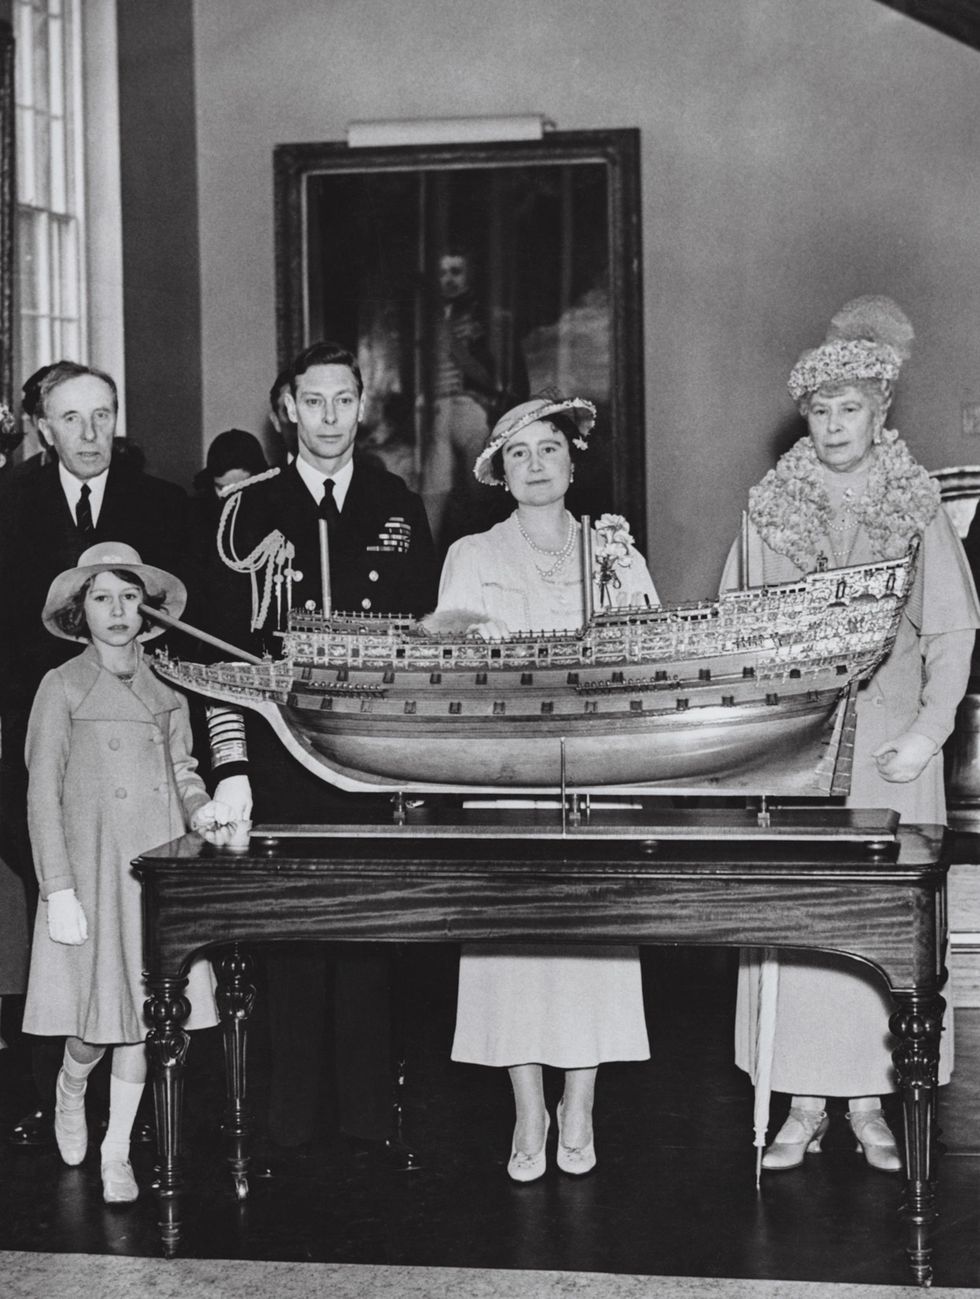 Ter gelegenheid van de opening van het National Maritime Museum in de Londense wijk Greenwich in 1937 poseren koning George VI koningingemalin Elizabeth koninginmoeder Mary en kroonprinses Elizabeth in 1937 voor een model van de Sovereign of the Seas